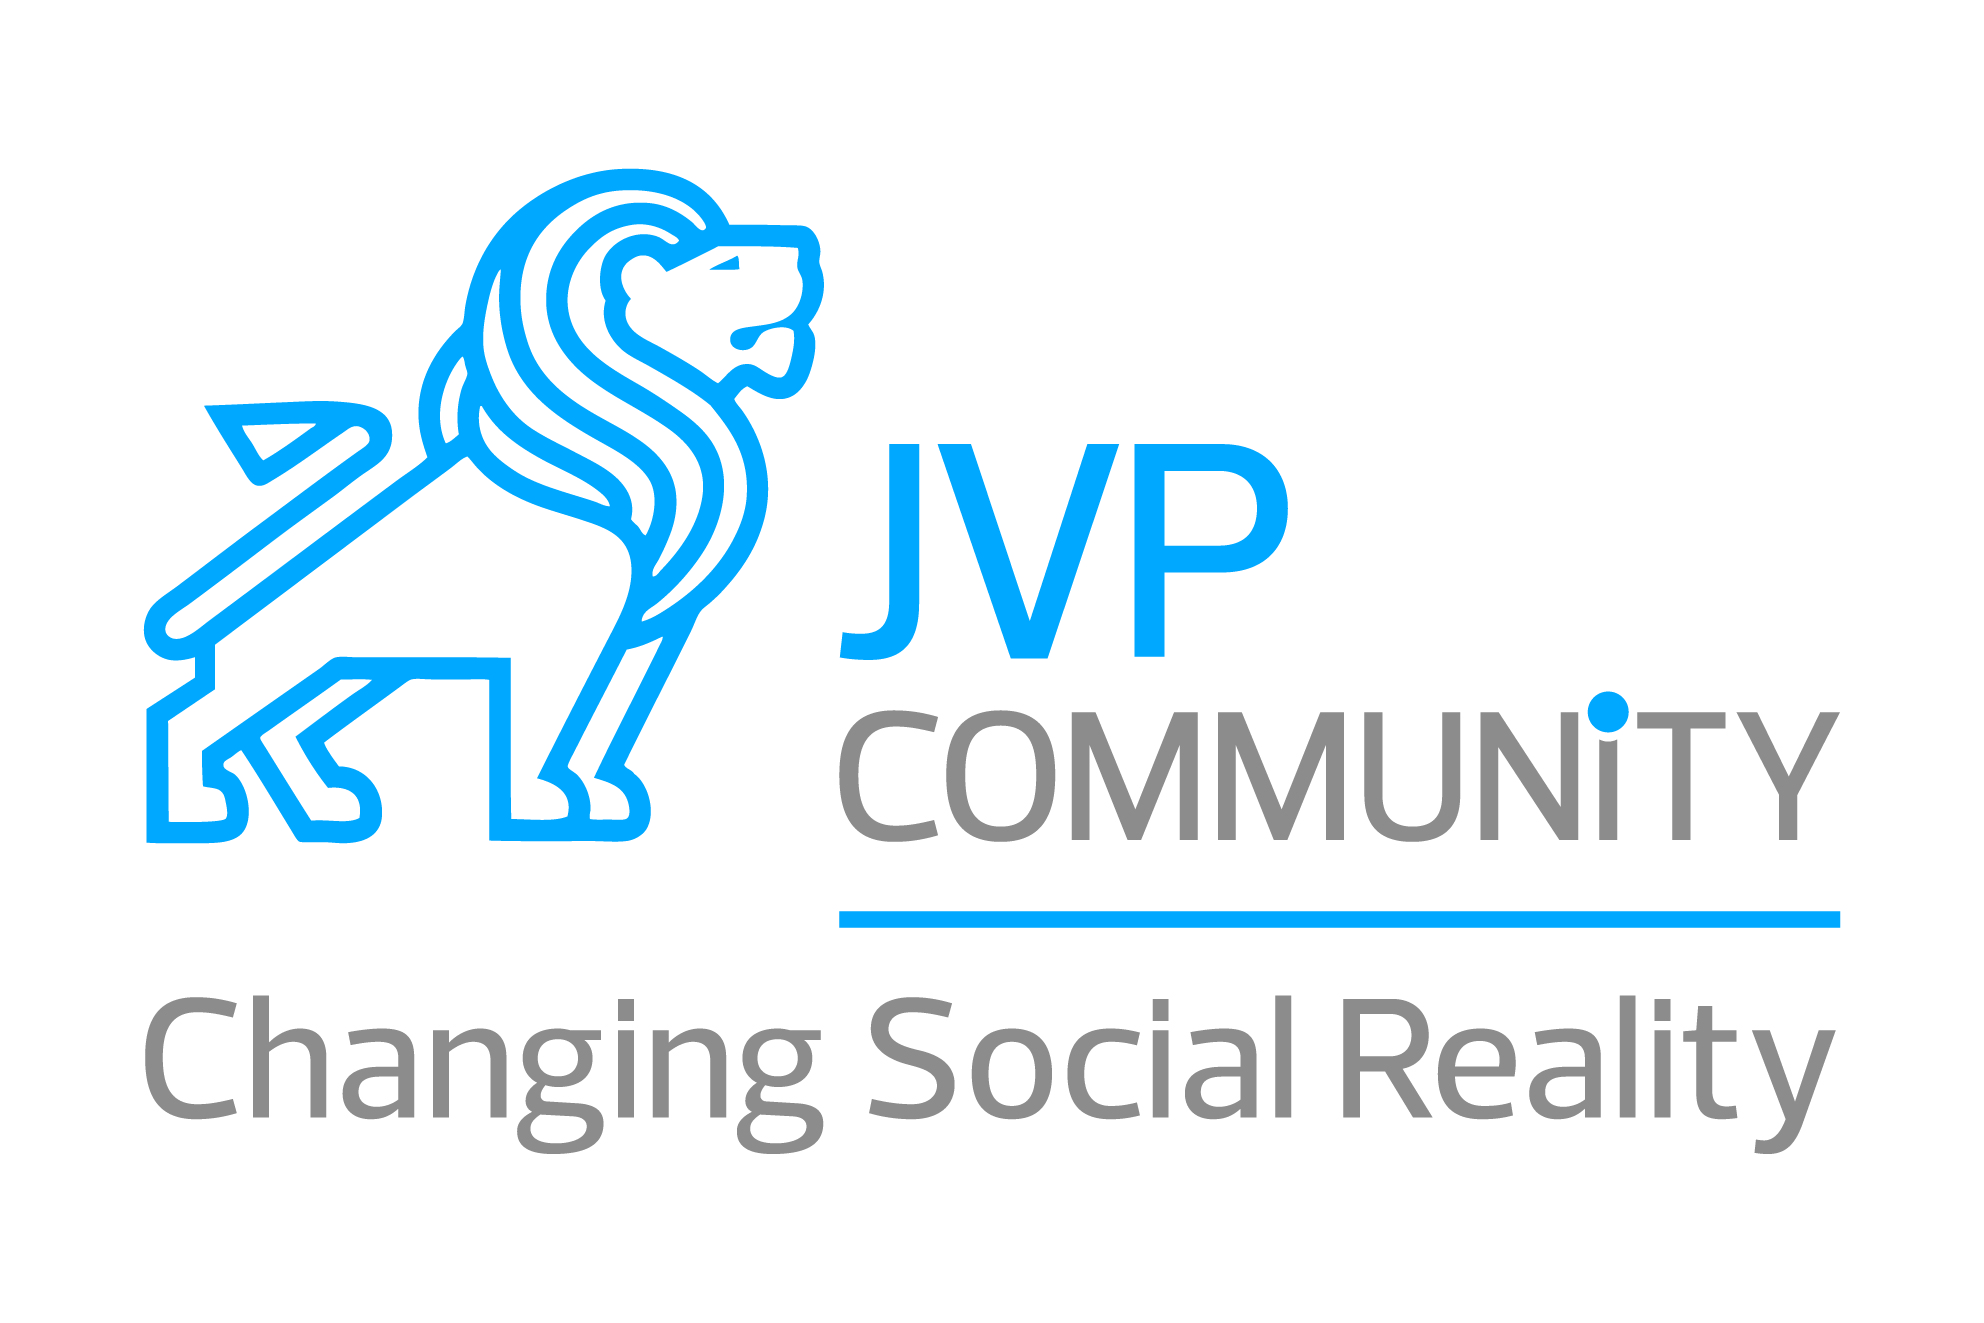 Jvp Logo photo - 1